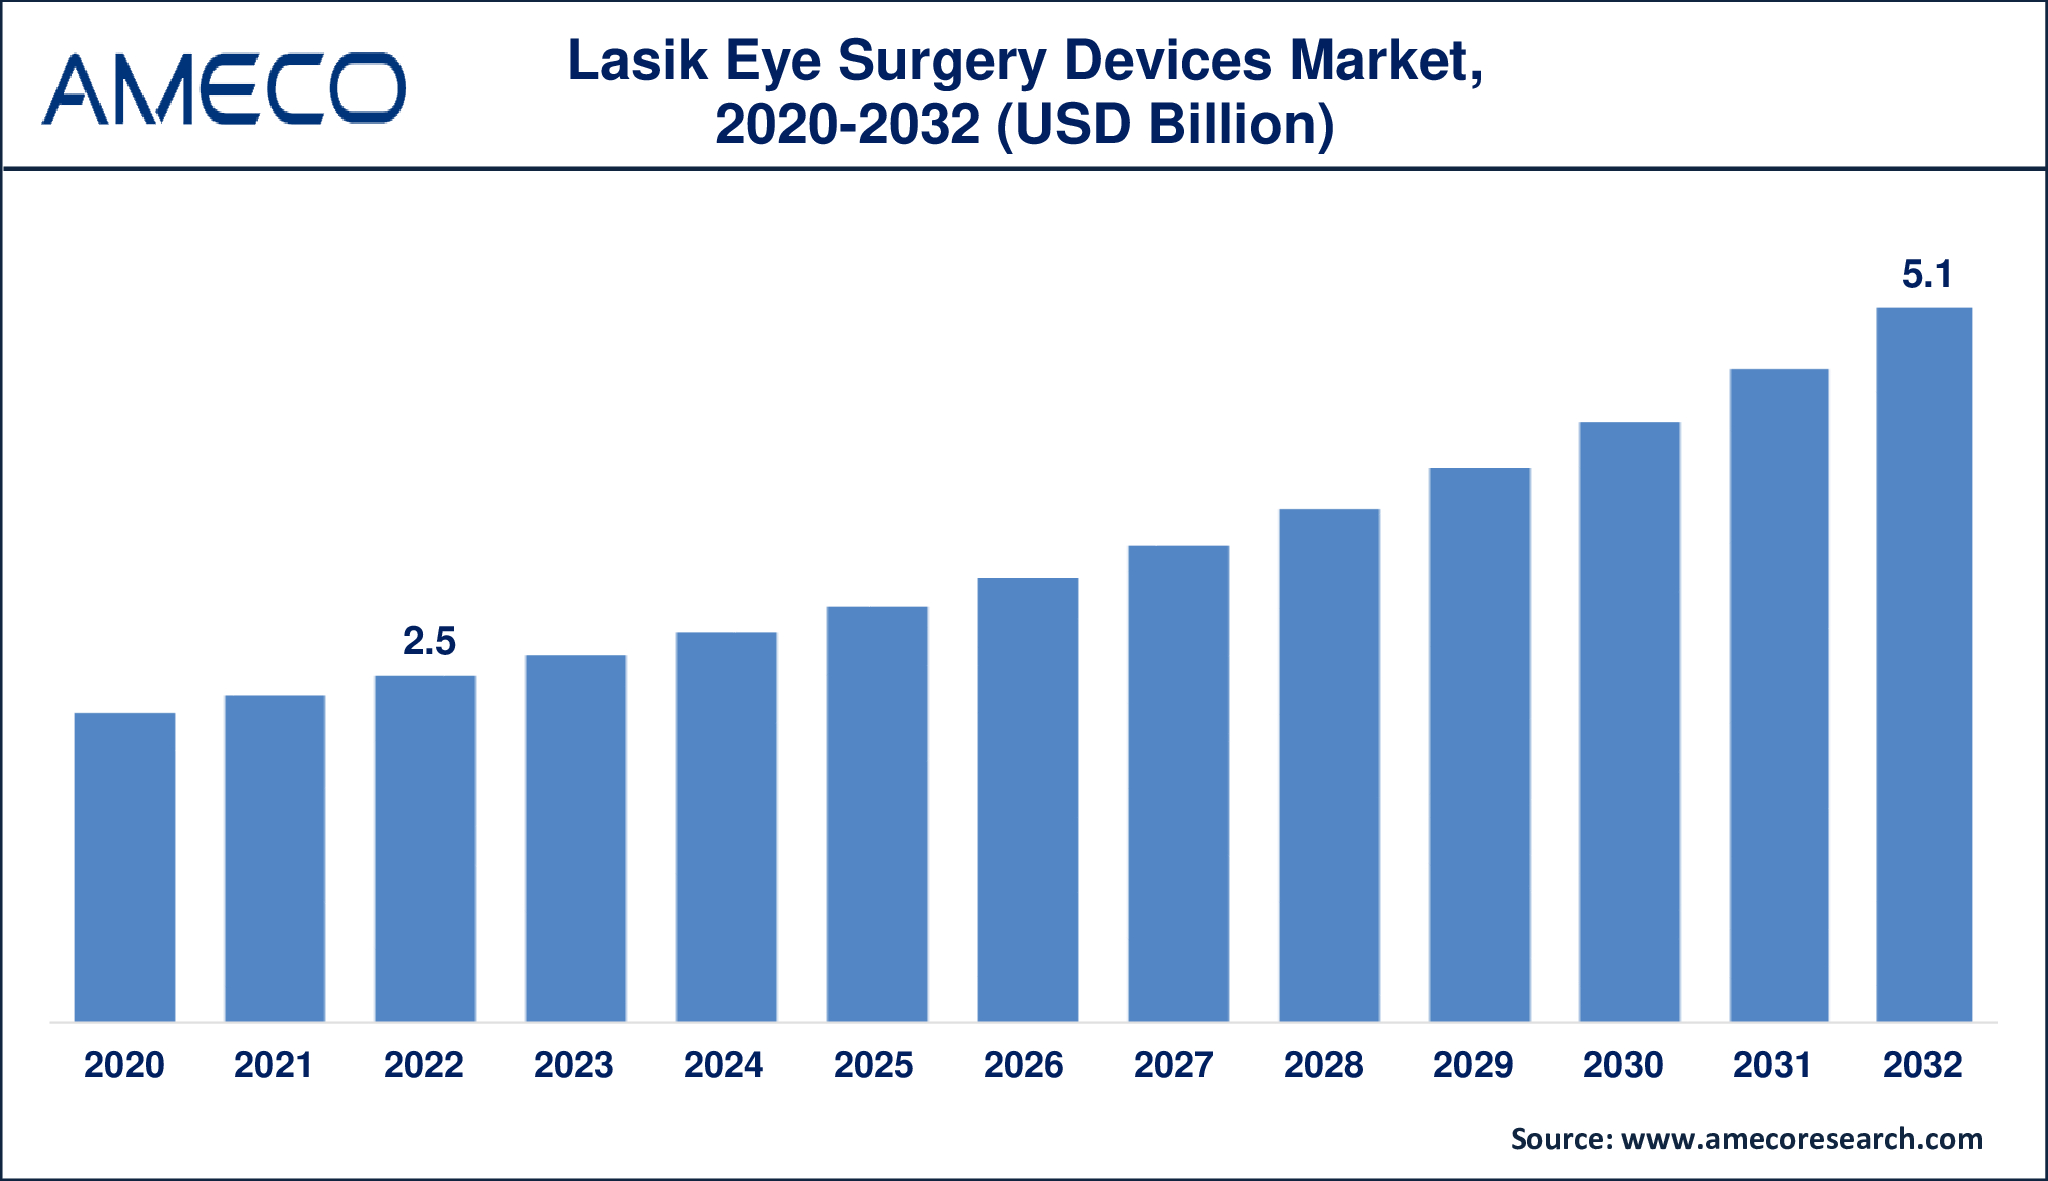 Lasik Eye Surgery Devices Market Dynamics